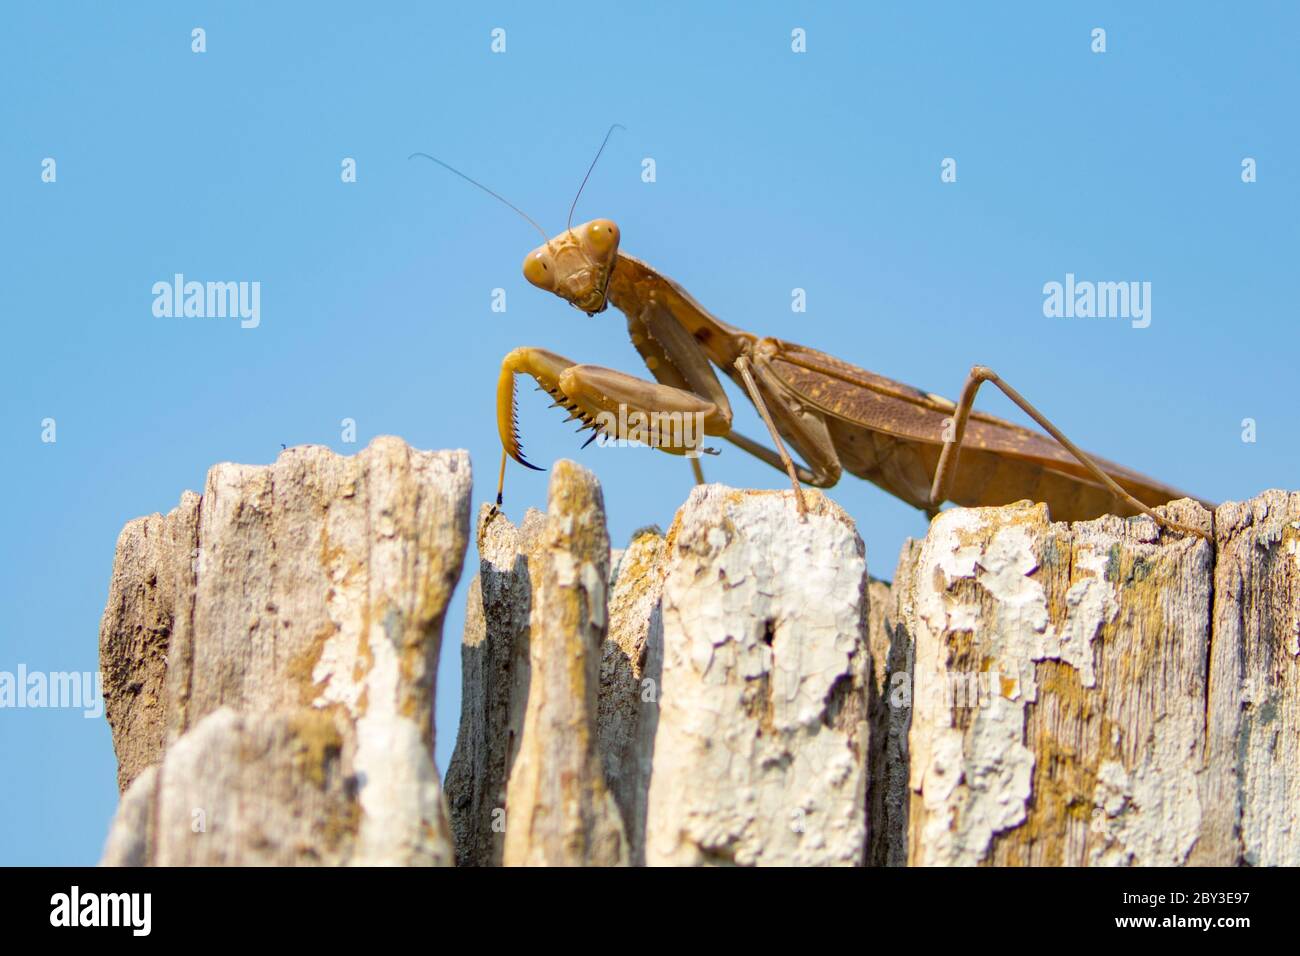 Immagine di mantis marrone su sfondo blu. Insetto. Foto Stock